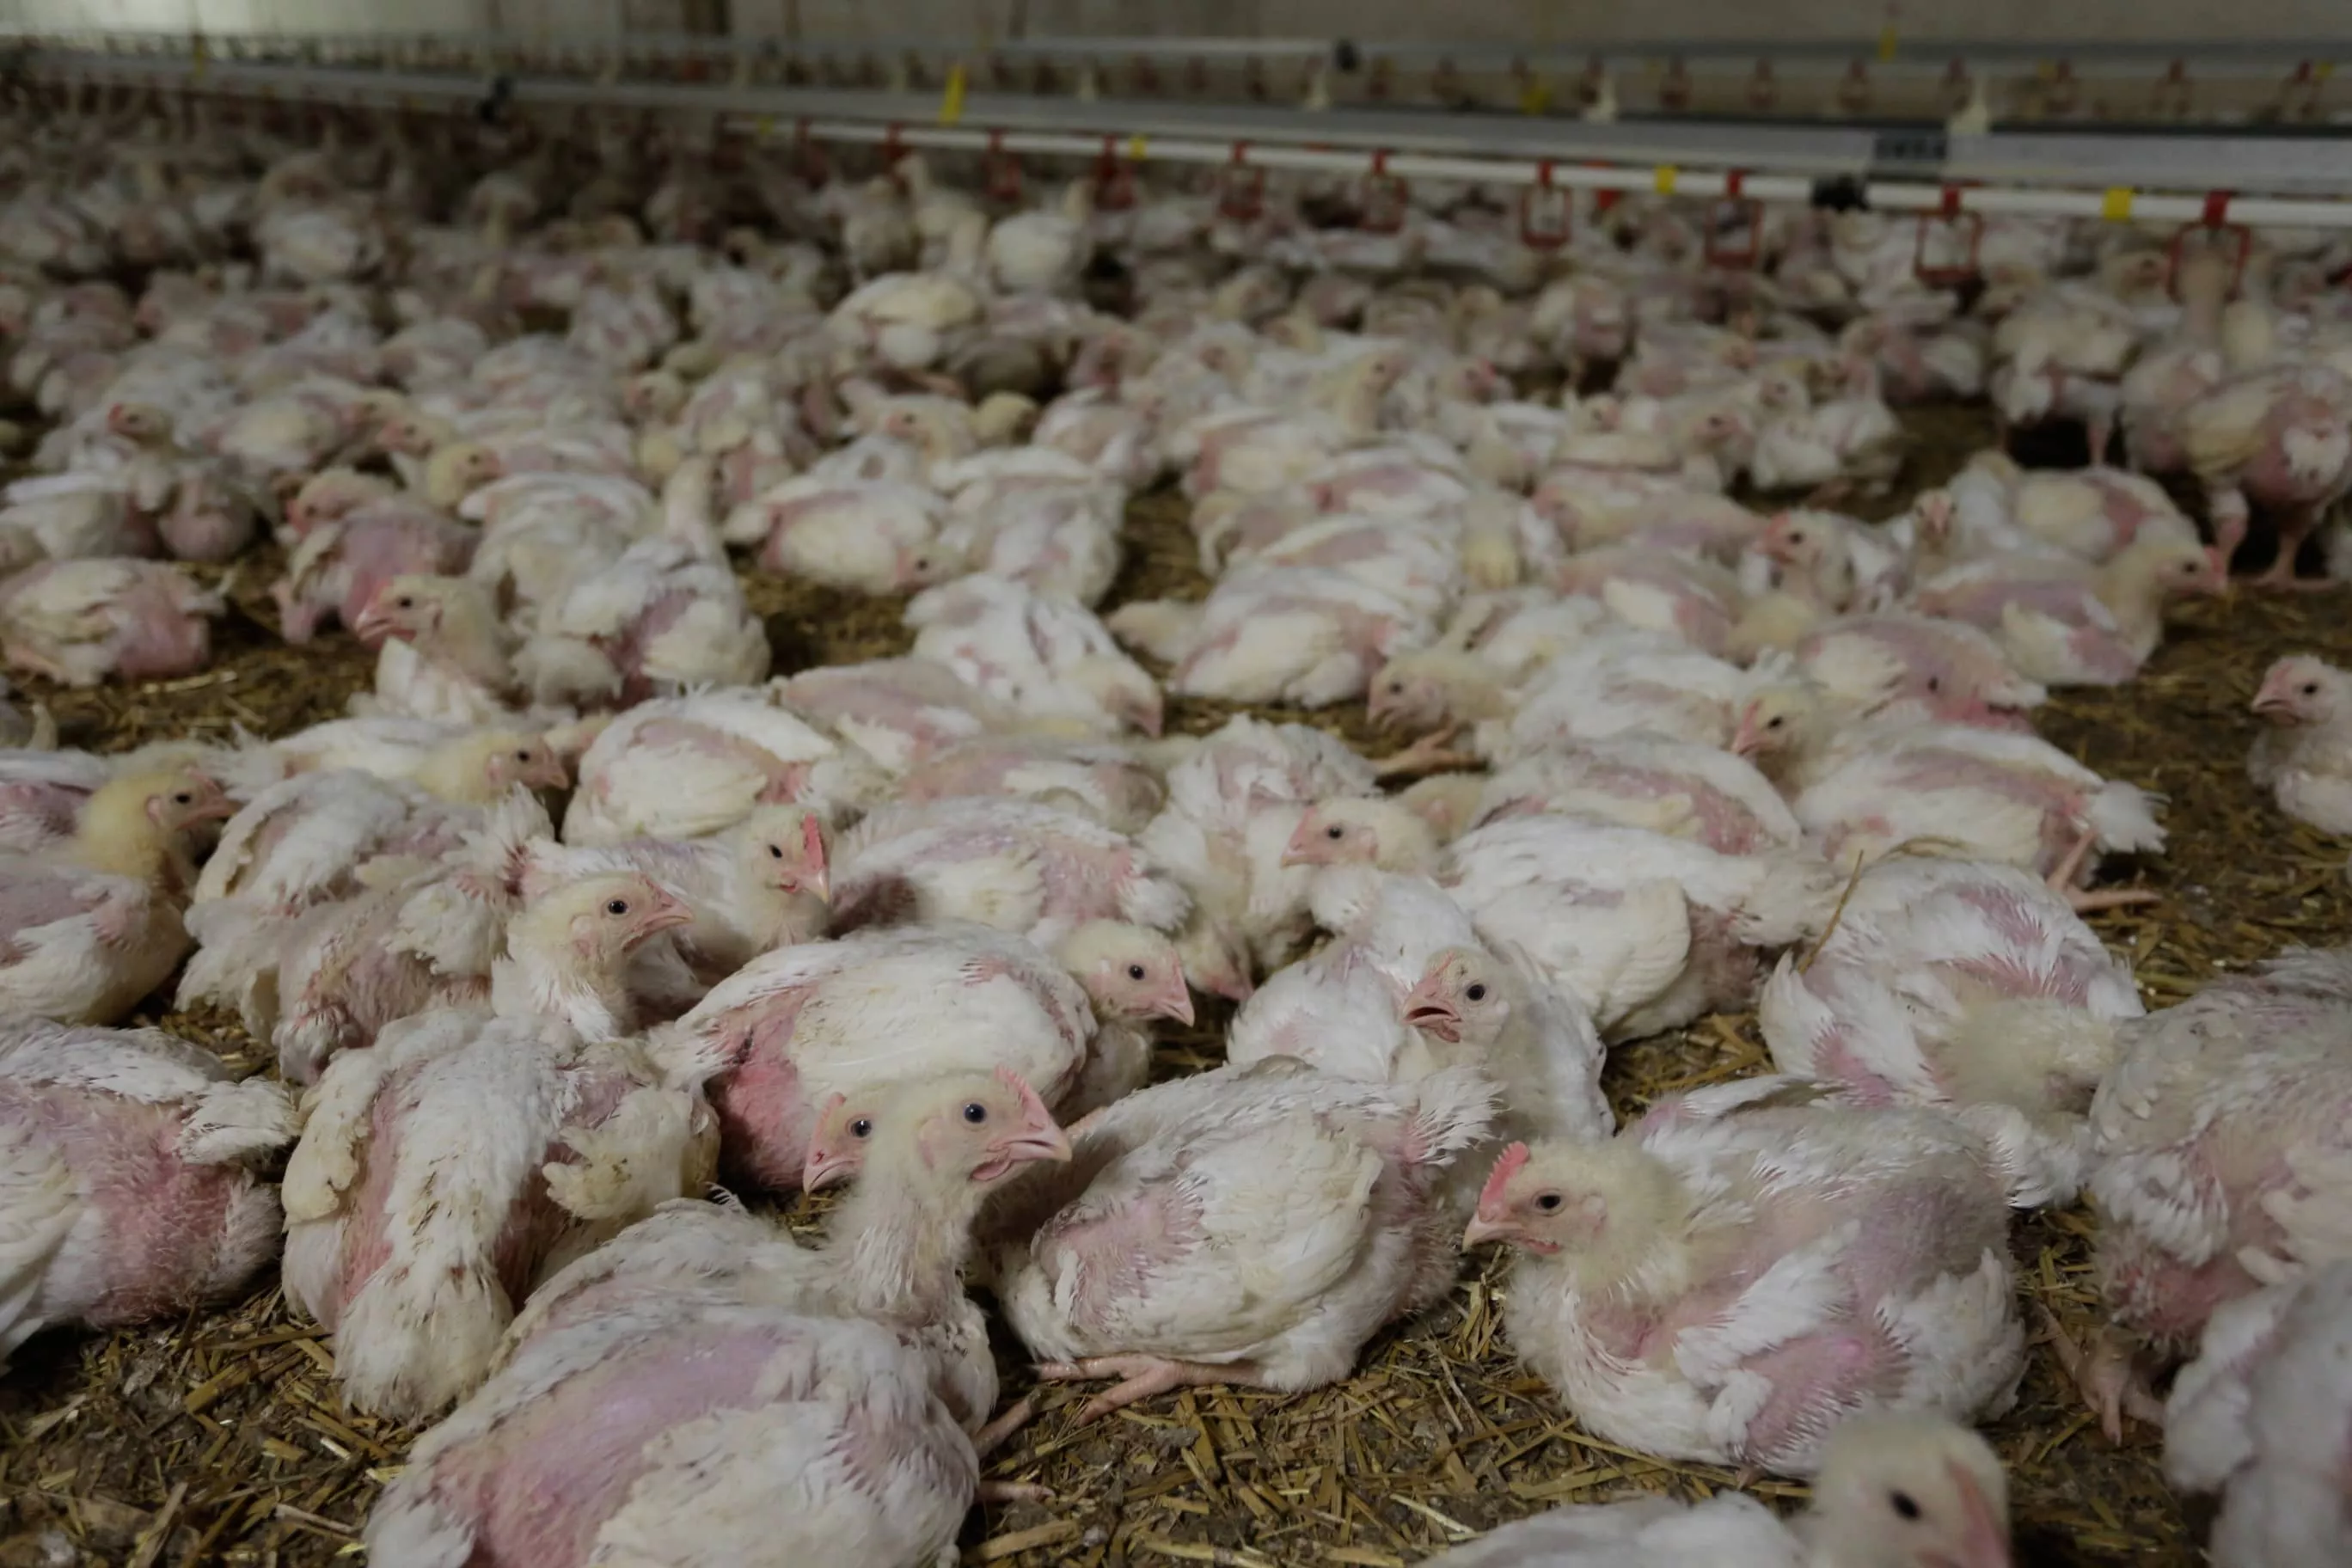 undercoverrecherche in einem hühnerhaltungsbetrieb